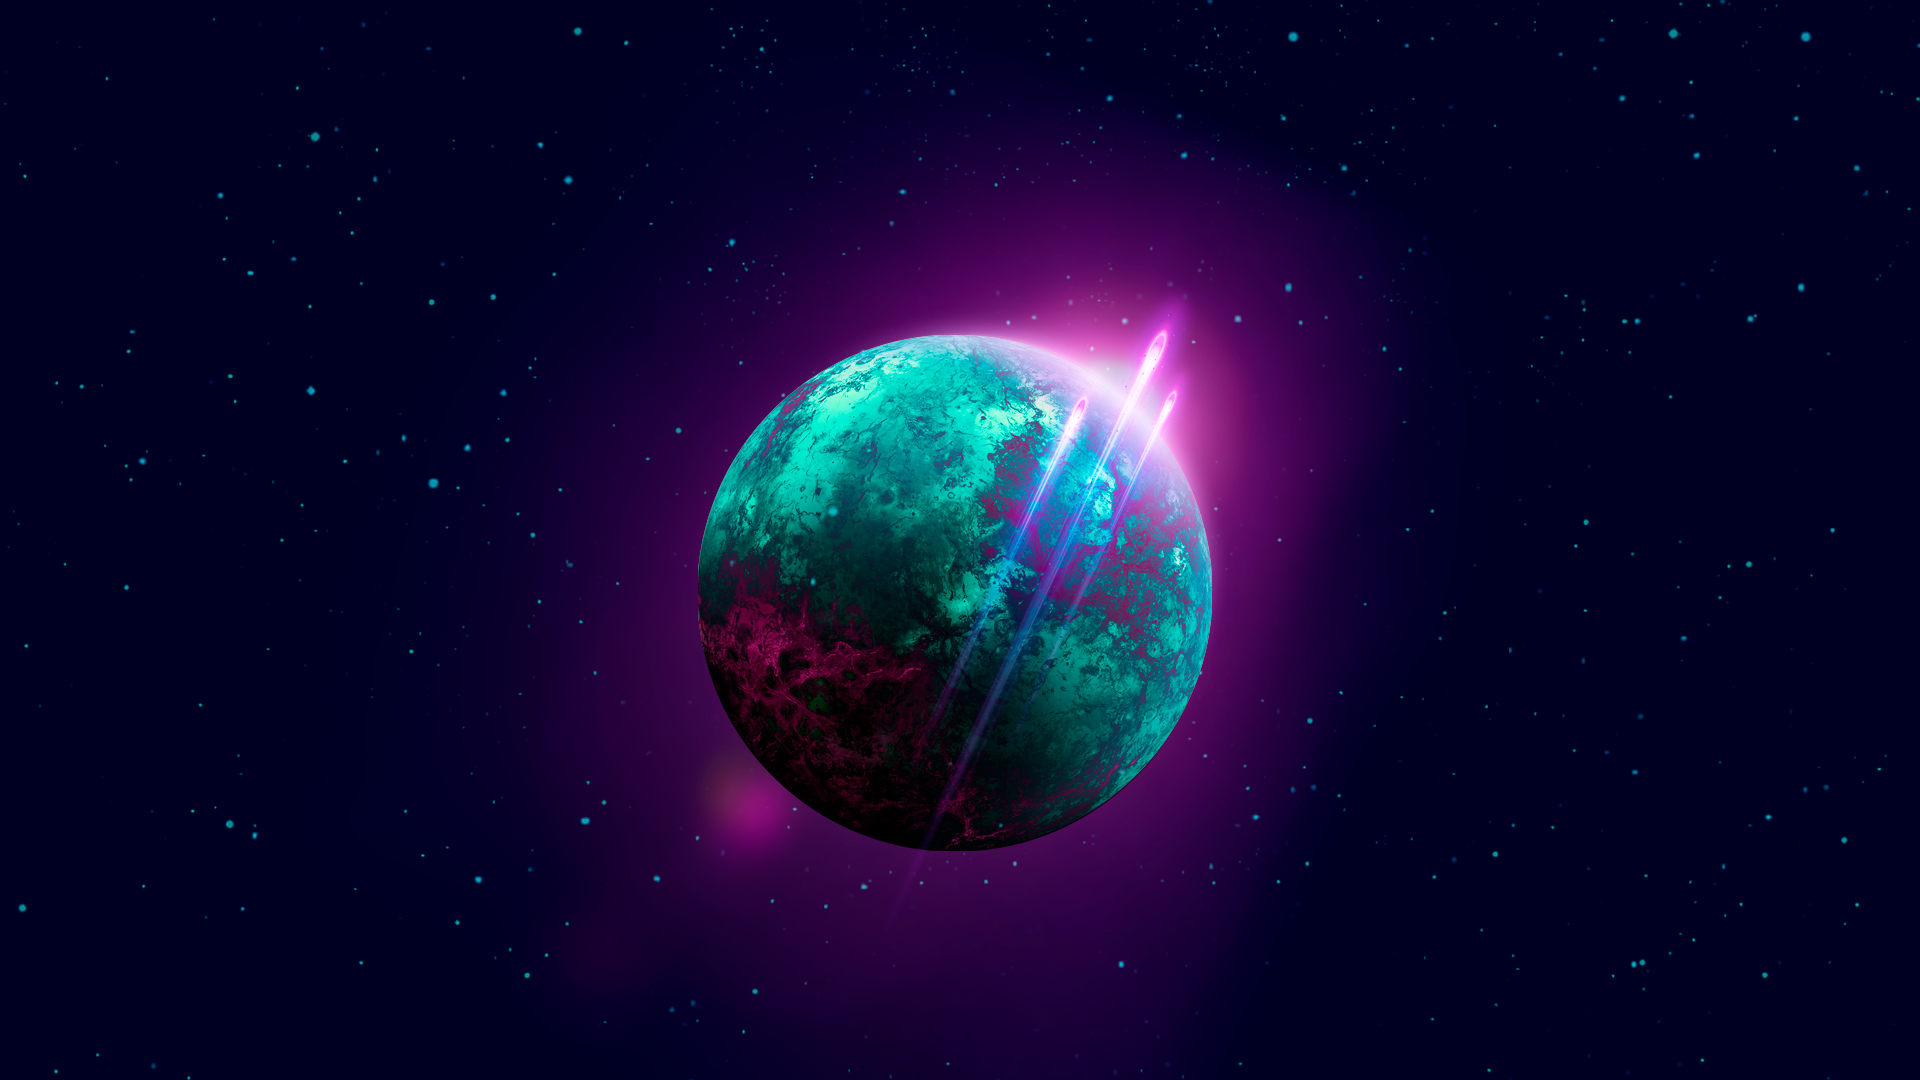 General 1920x1080 space stars planet purple background retrowave dark dark background blue